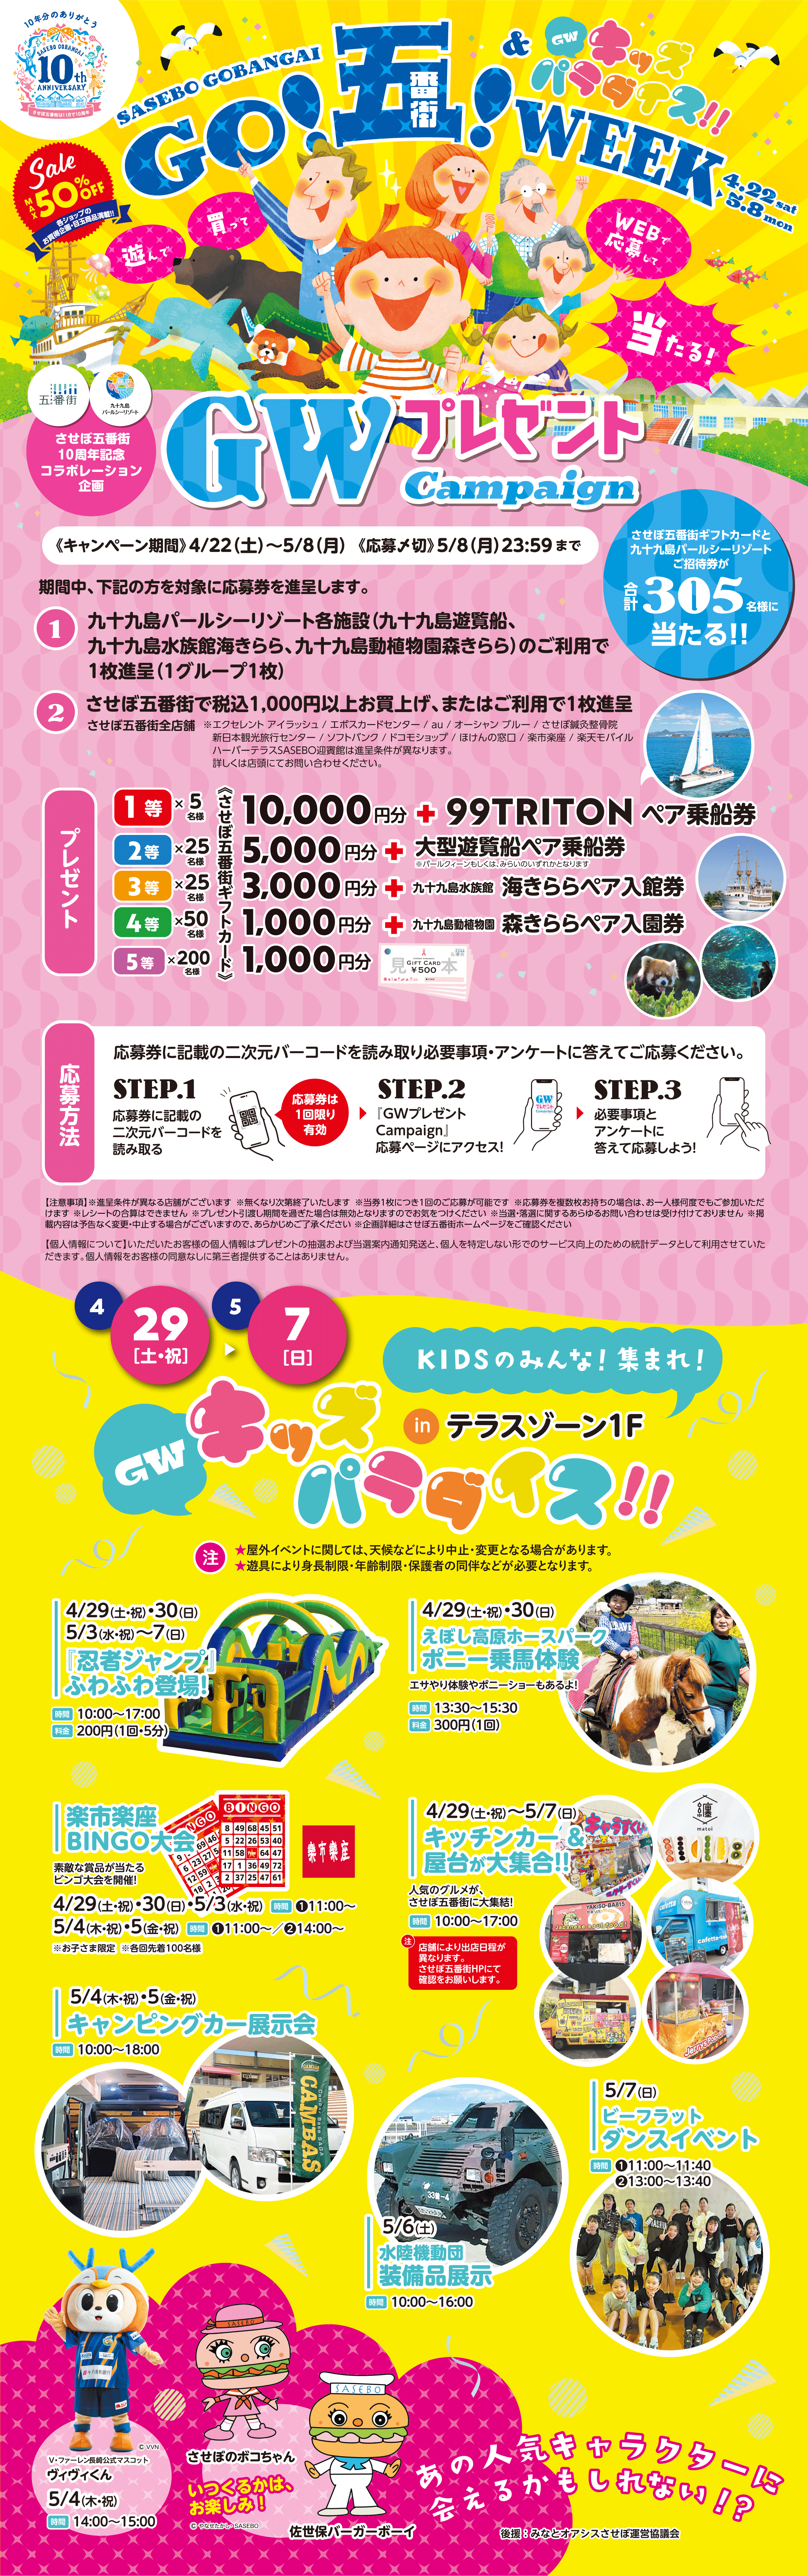 GO!五!WEEK! 4/22（土）〜5/8（月）